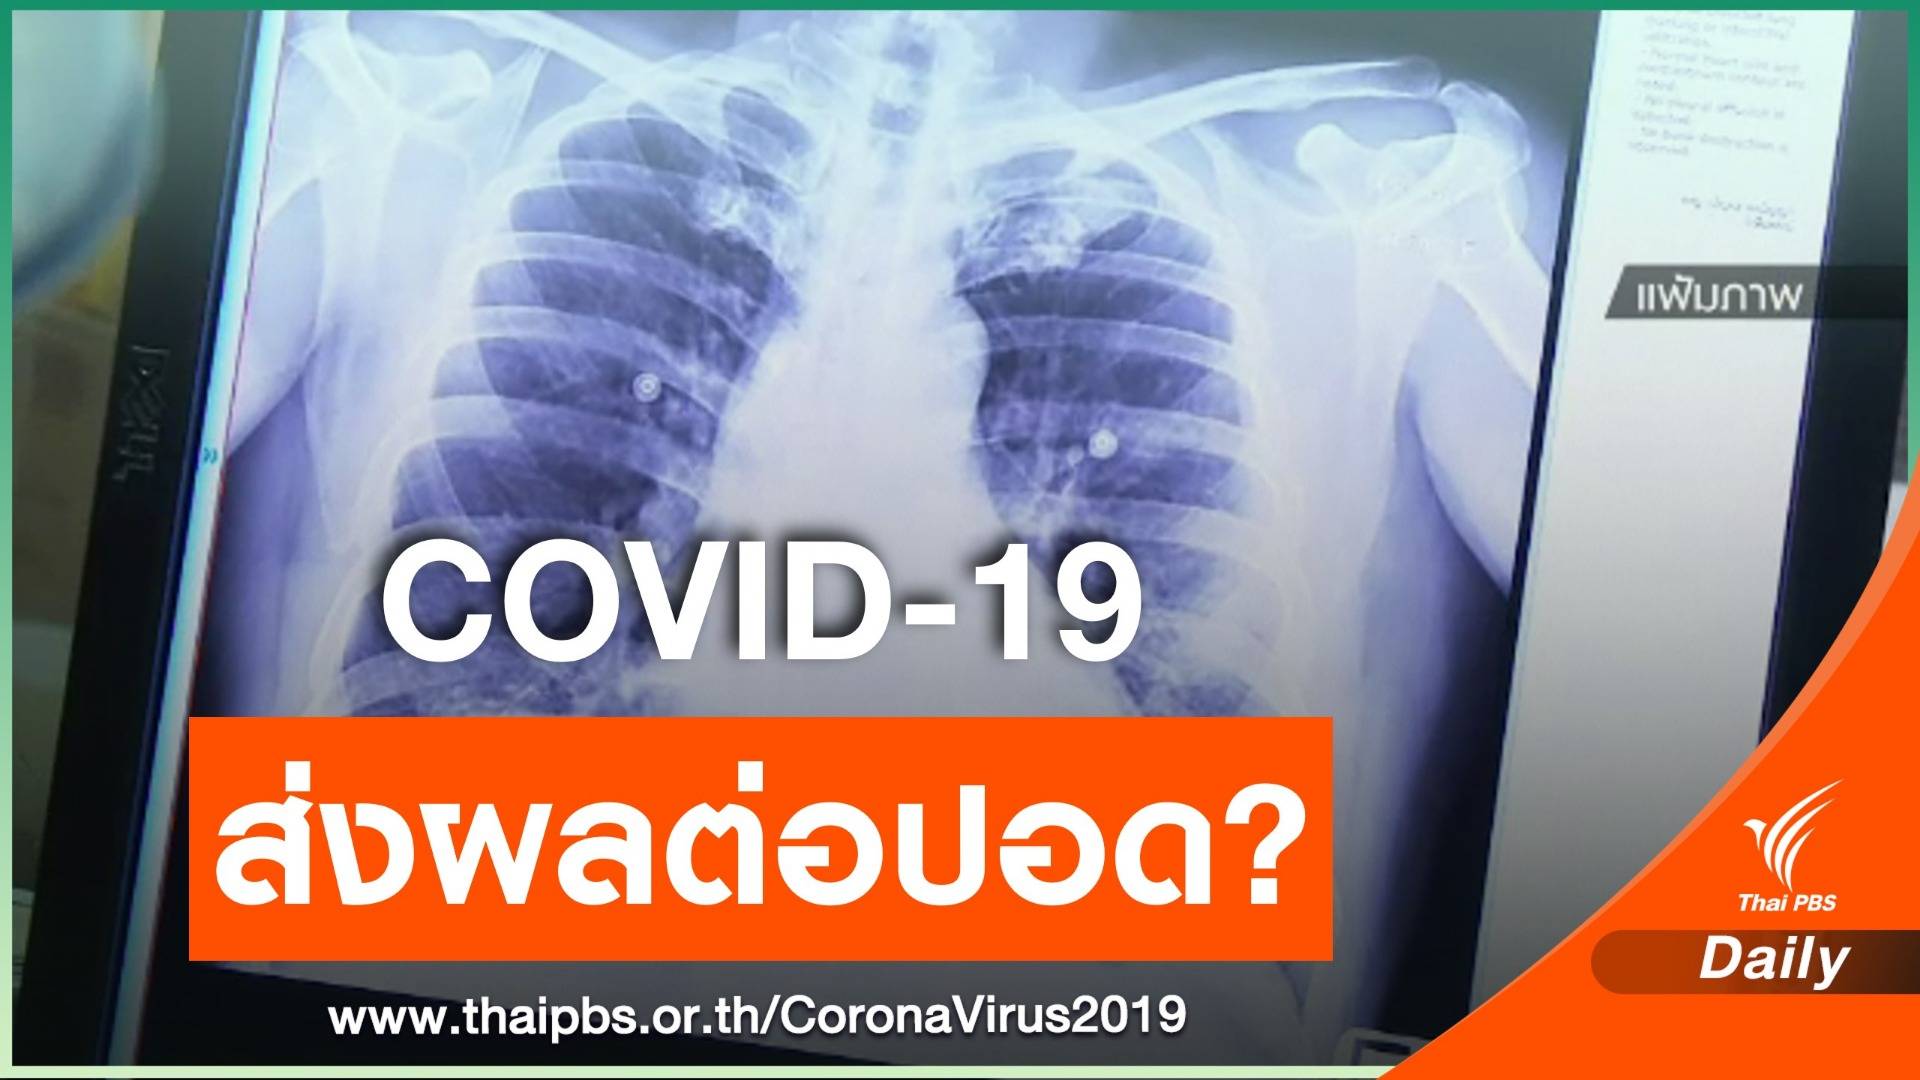 หมอแจงผู้ป่วย COVID-19 หายแล้ว ส่วนใหญ่ปอดยังทำงานได้ปกติ